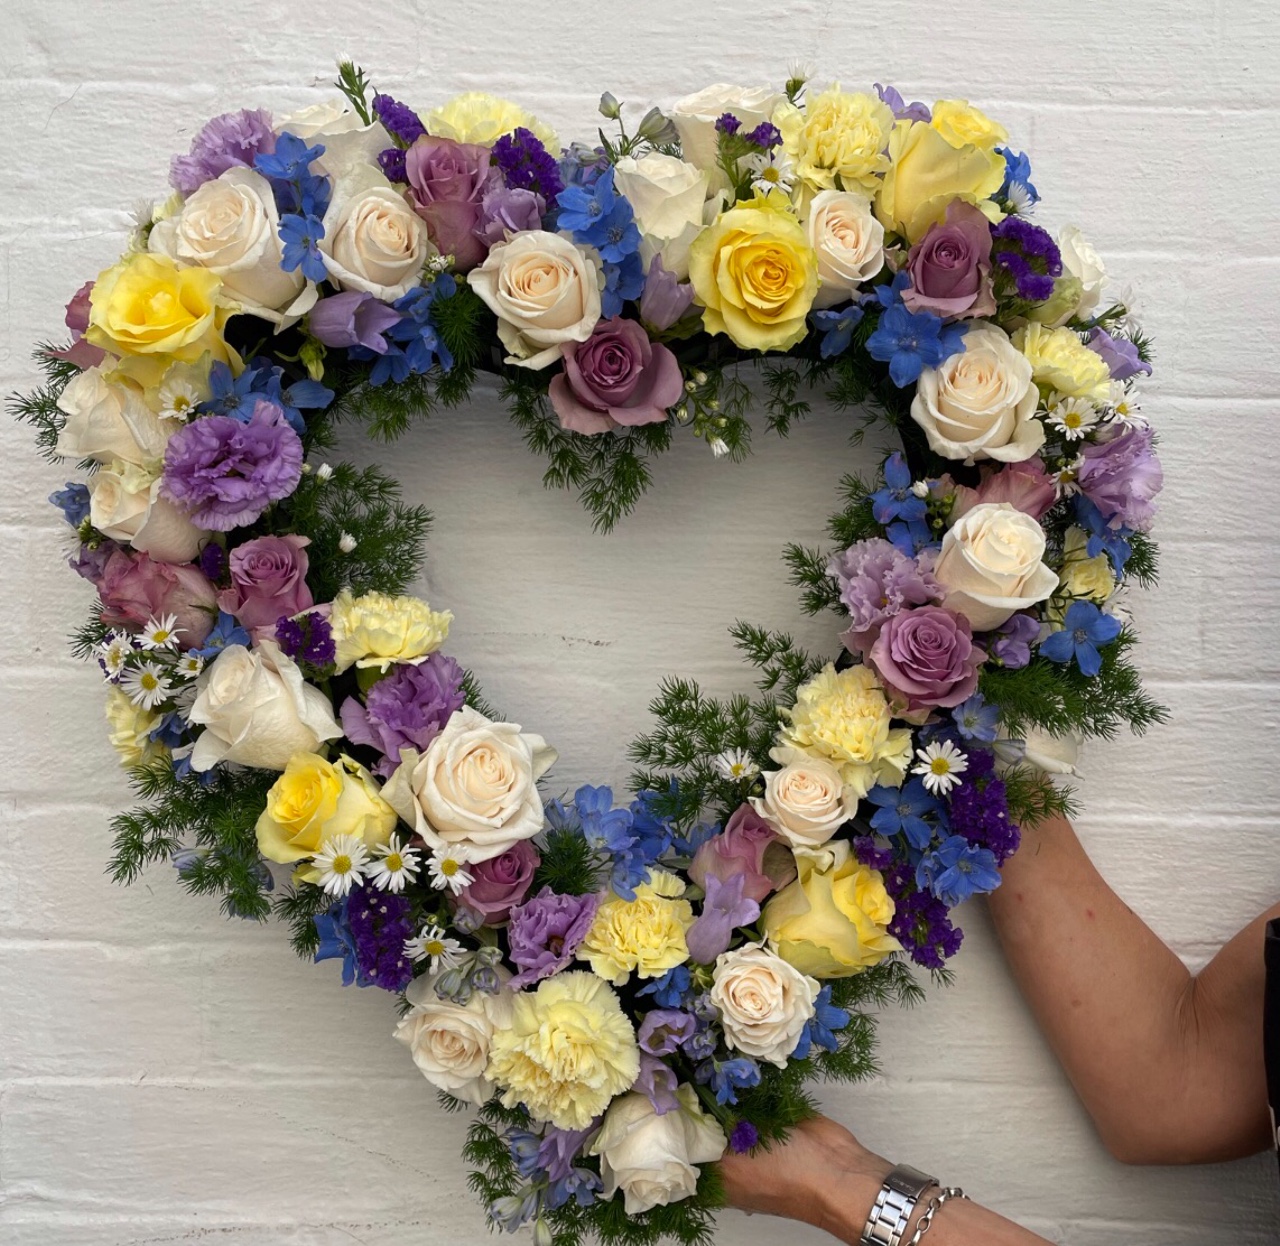 Send Heart Funeral Wreath in Sydney - Funeral Flowers Sydney